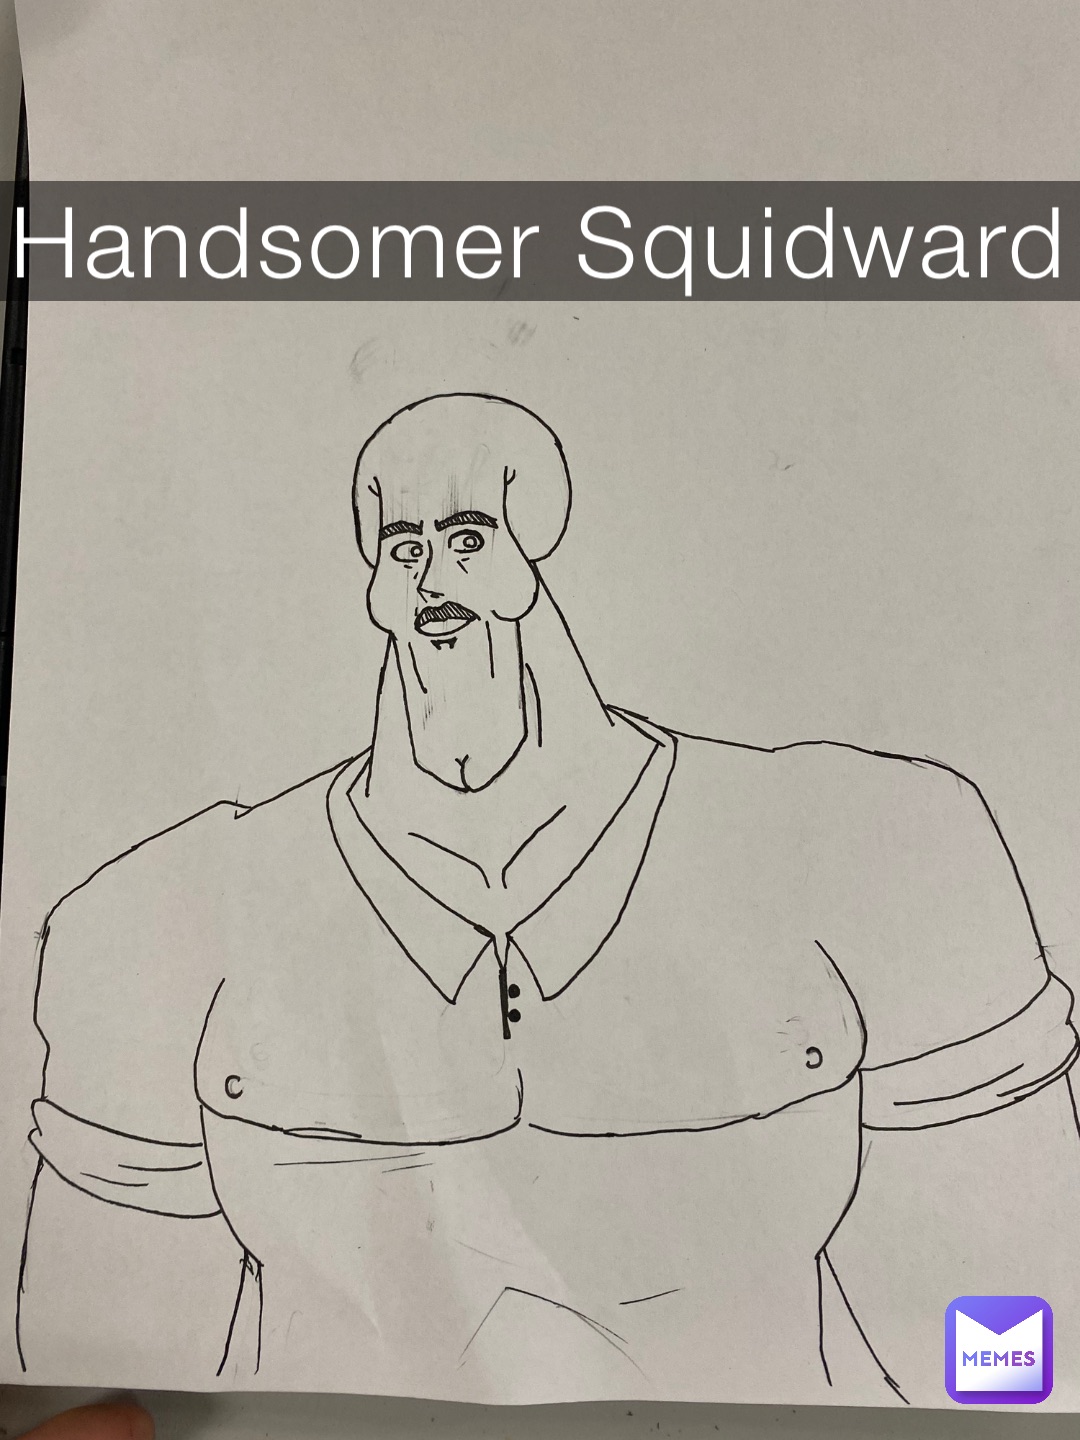 Handsomer Squidward